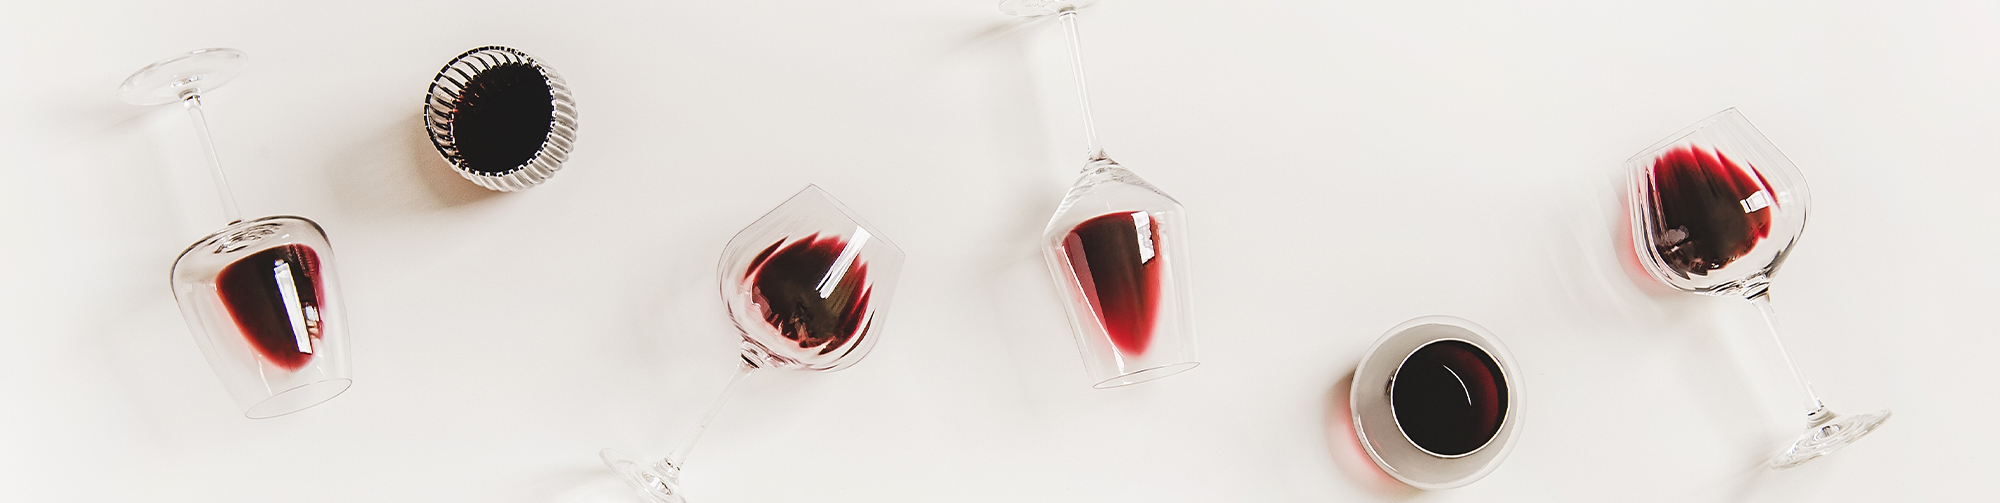 Recomendador de vinotecas